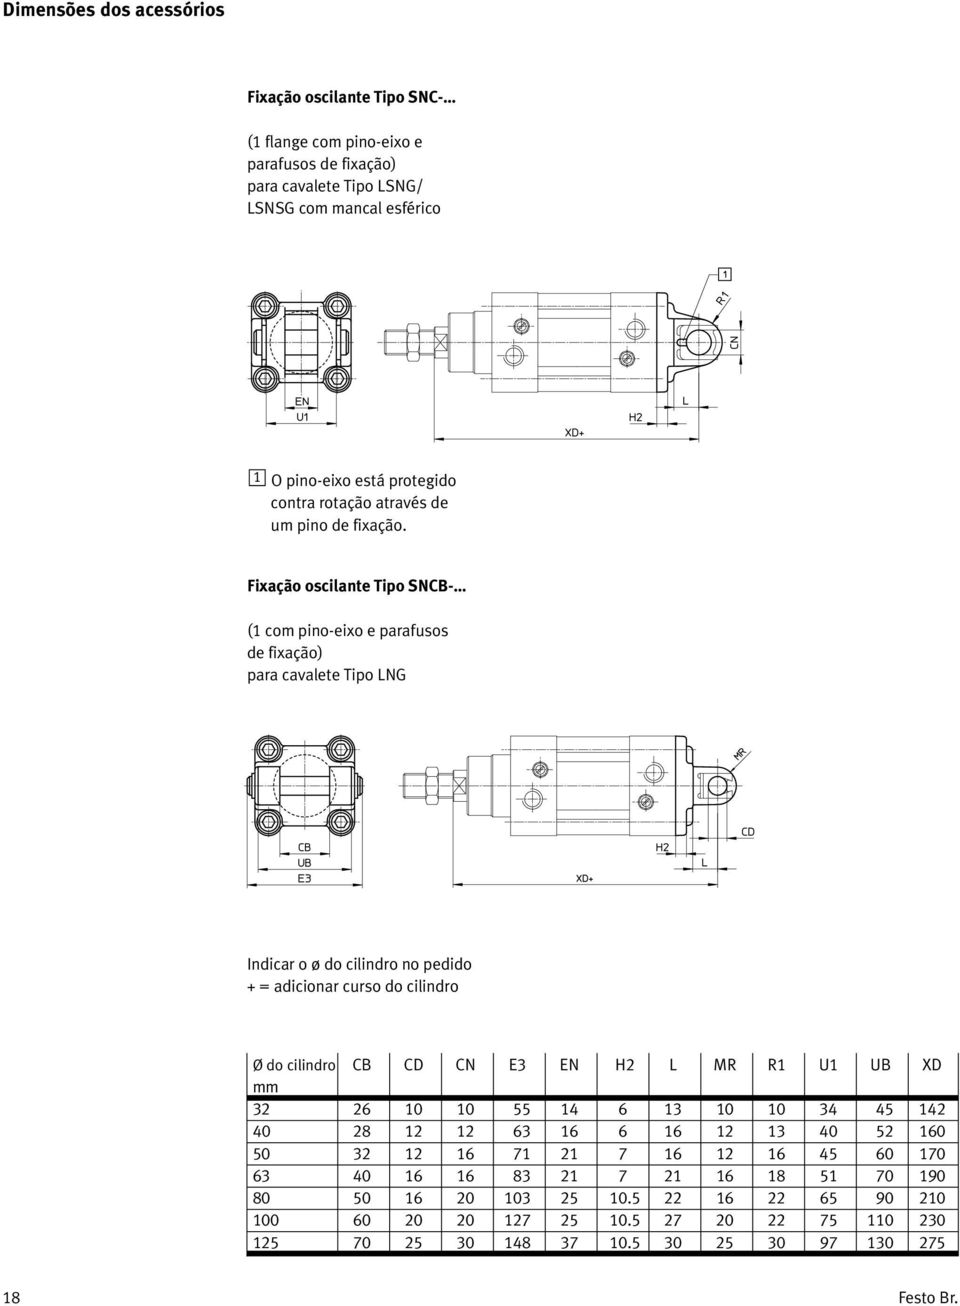 Fixação oscilante Tipo SNCB- (1 com pino-eixo e parafusos de fixação) para cavalete Tipo LNG Indicar o ø do cilindro no pedido + = adicionar curso do cilindro Ø do cilindro CB CD CN E3 EN